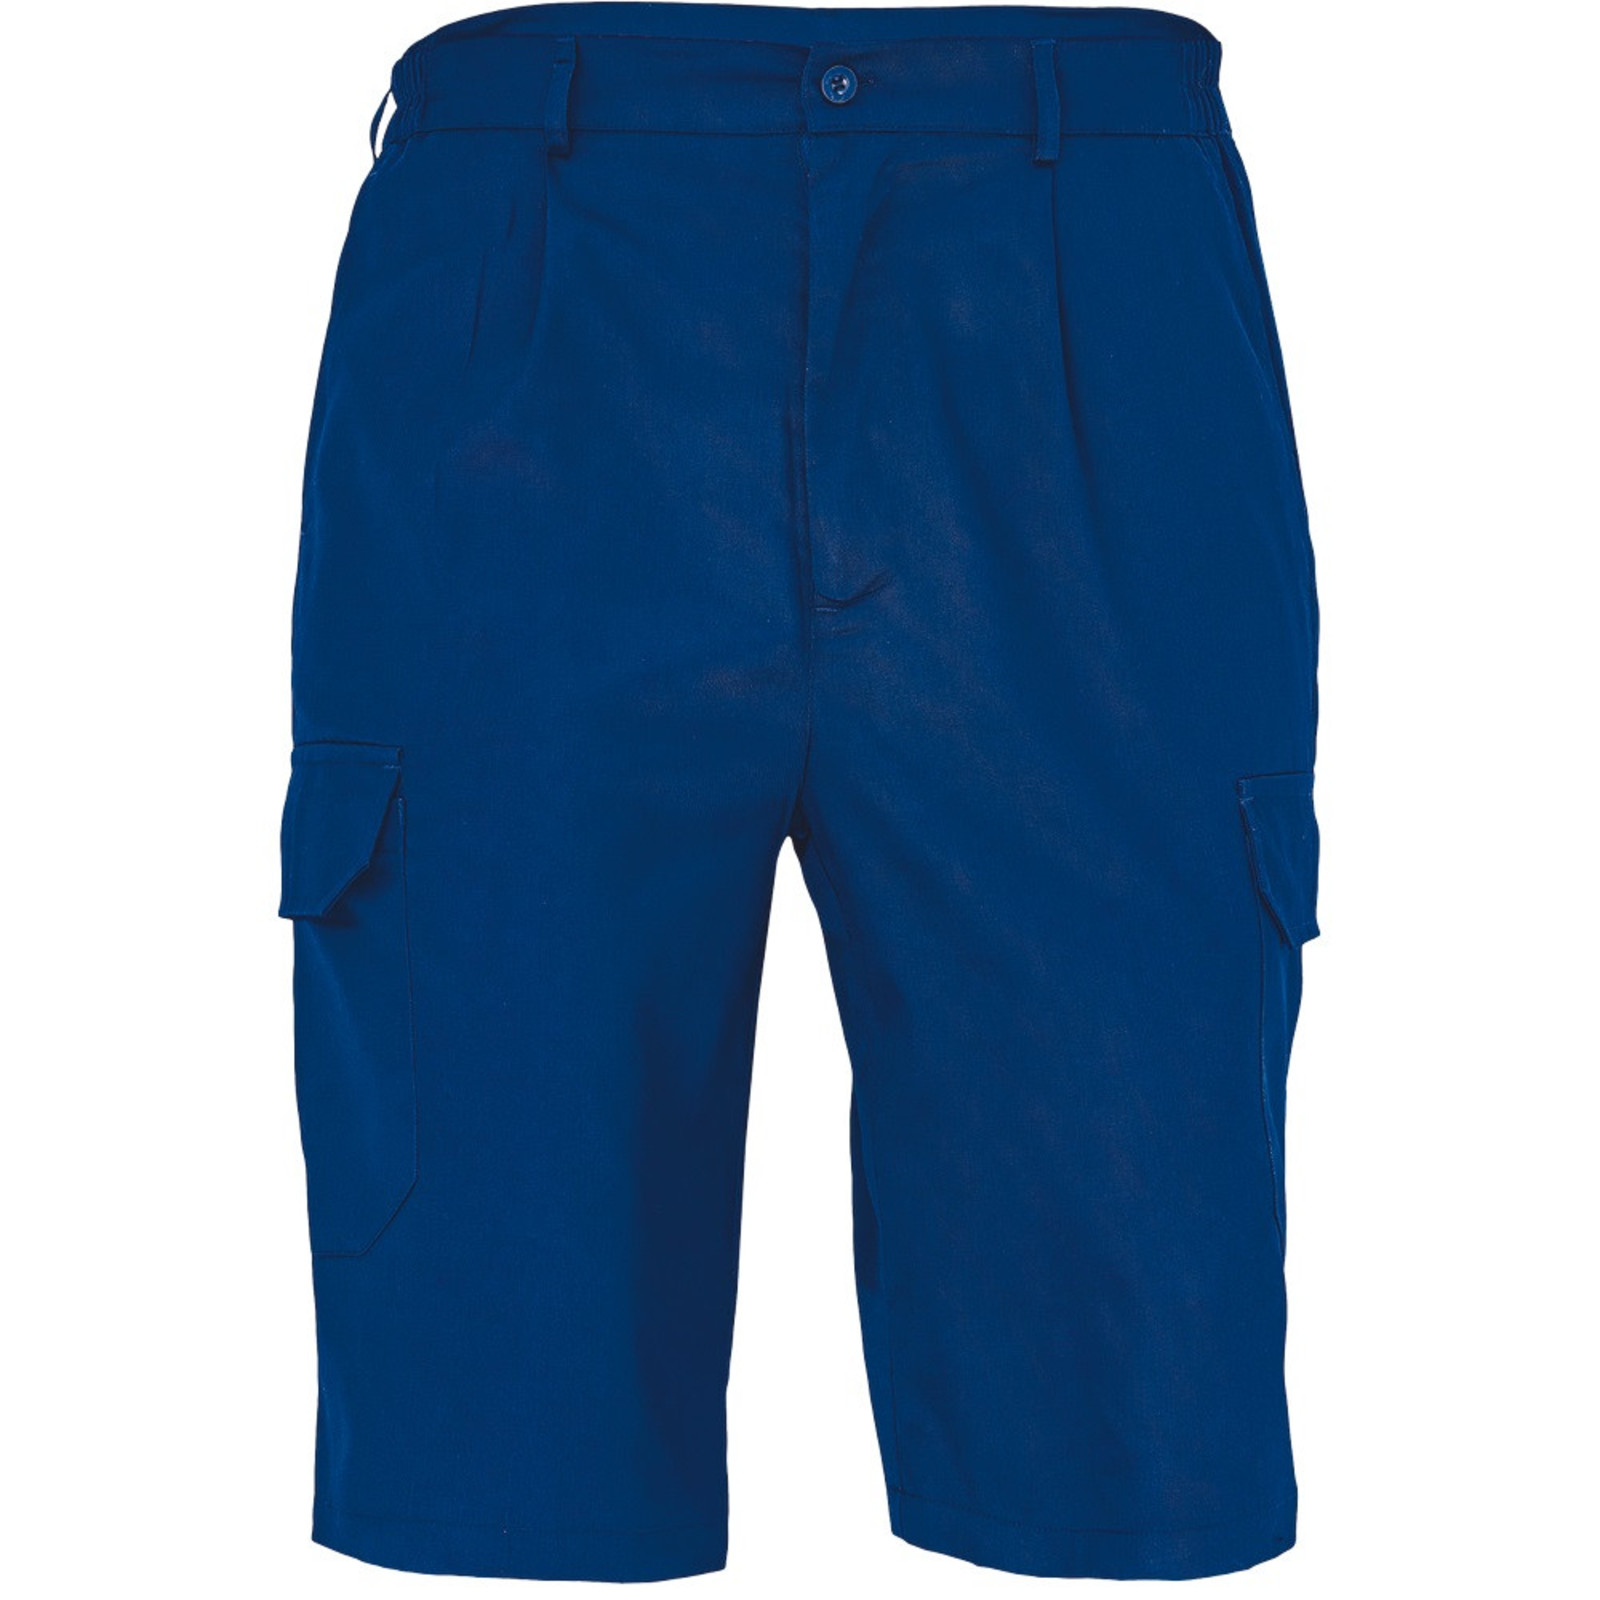 Pánske pracovné šortky Cerva FF Johan - veľkosť: 54, farba: royal blue